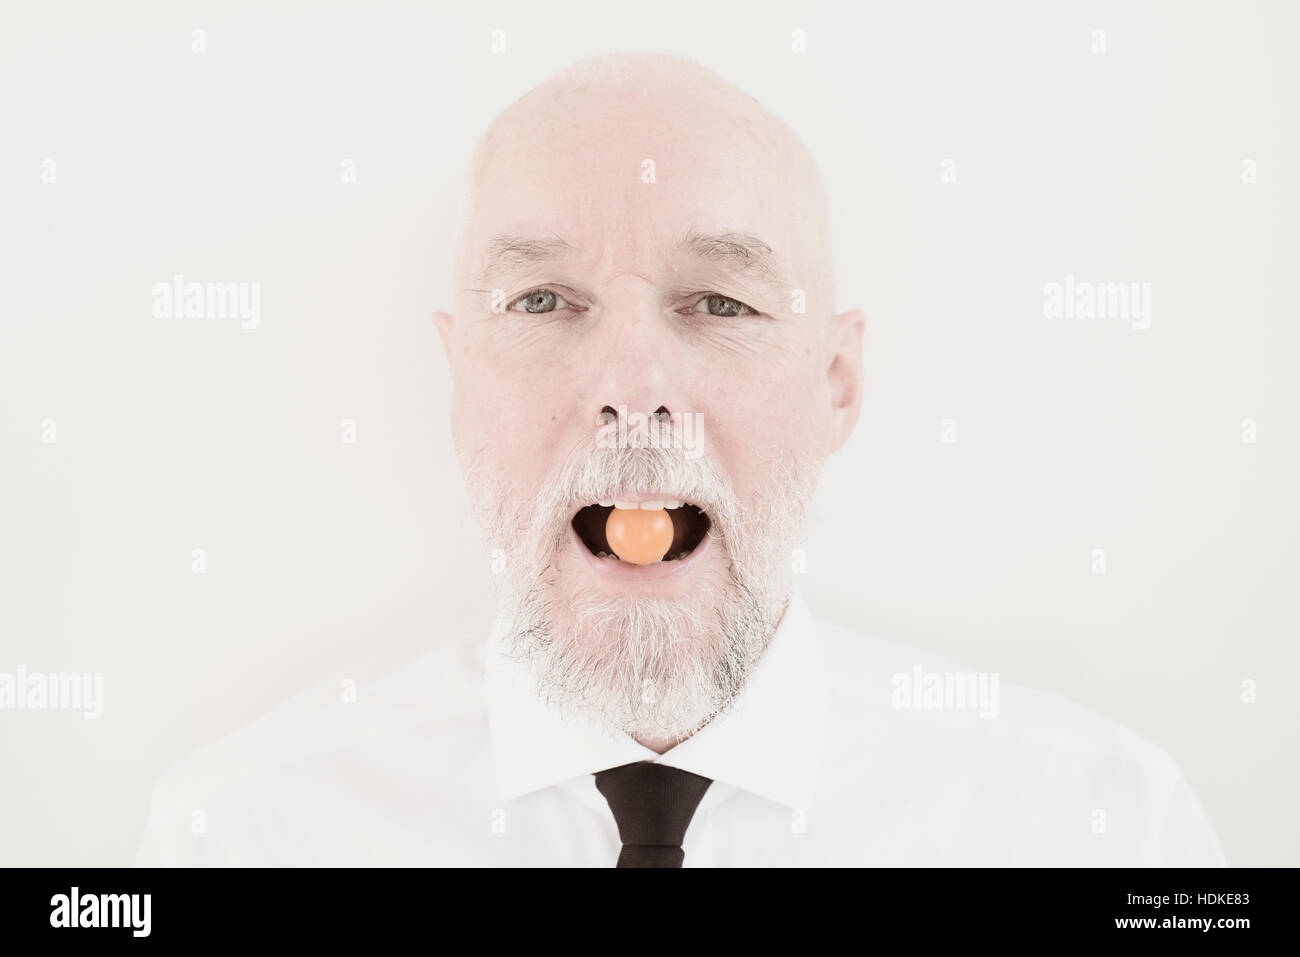 Ritratto di vecchio uomo con piccoli pomodoro nella sua bocca. Divertente e giocoso momento. Immagine concettuale di uno stile di vita sano e mangiare le verdure come senior Foto Stock